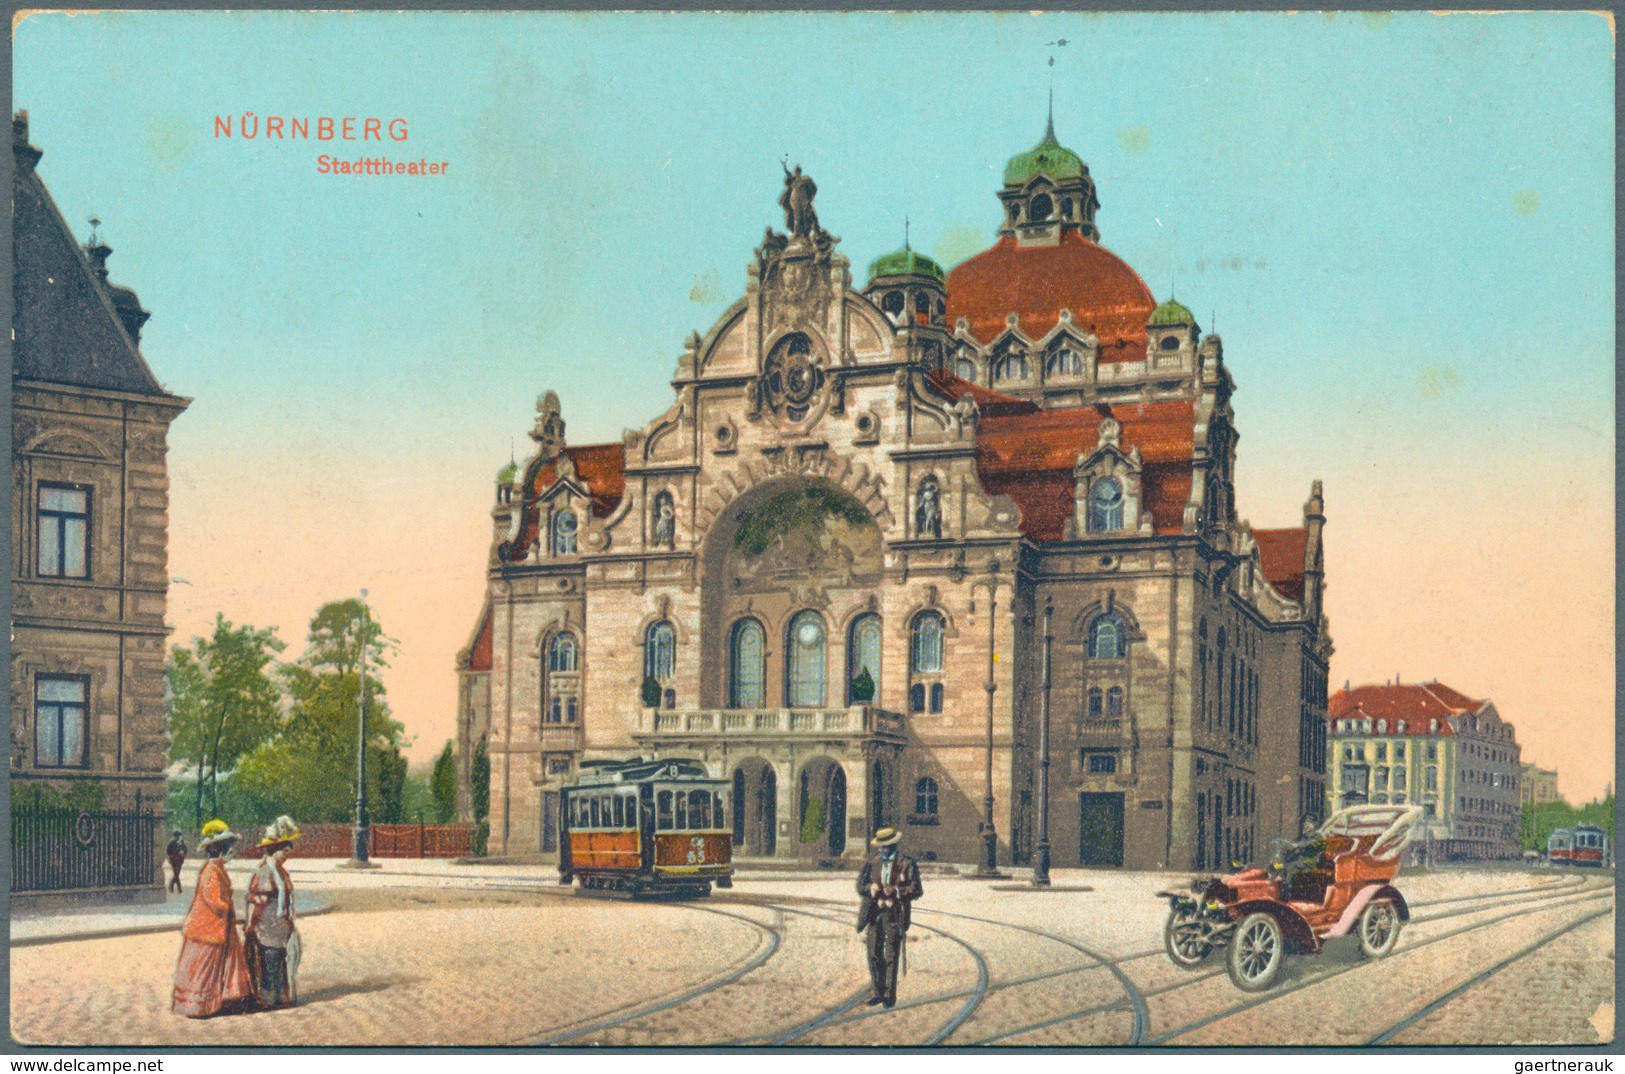 Ansichtskarten: Bayern: NÜRNBERG (alte PLZ 8500), ein werthaltiger Bestand an ca. 480 Ansichtskarten